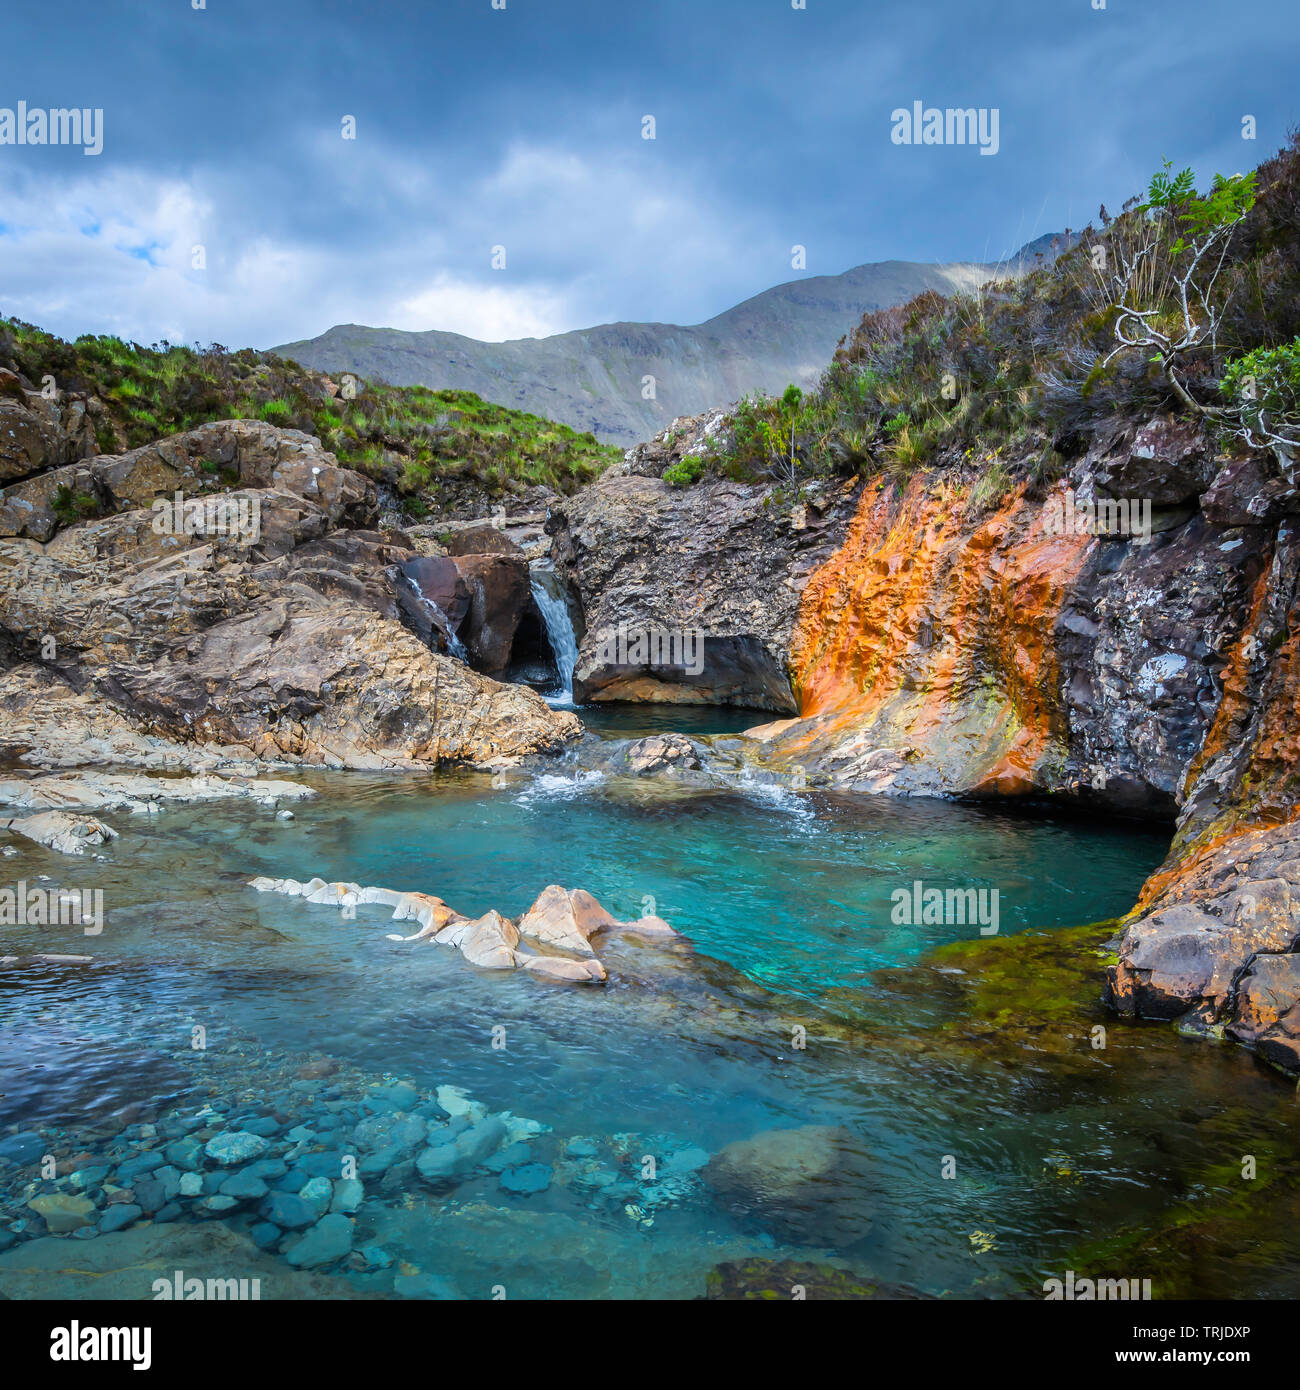 Lo splendido paesaggio, Isola di Skye,Scozia.Fata piscine, laghetti con acqua turchese, cascate e rocce colorate.Ethereal paesaggio, la bellezza della natura. Foto Stock